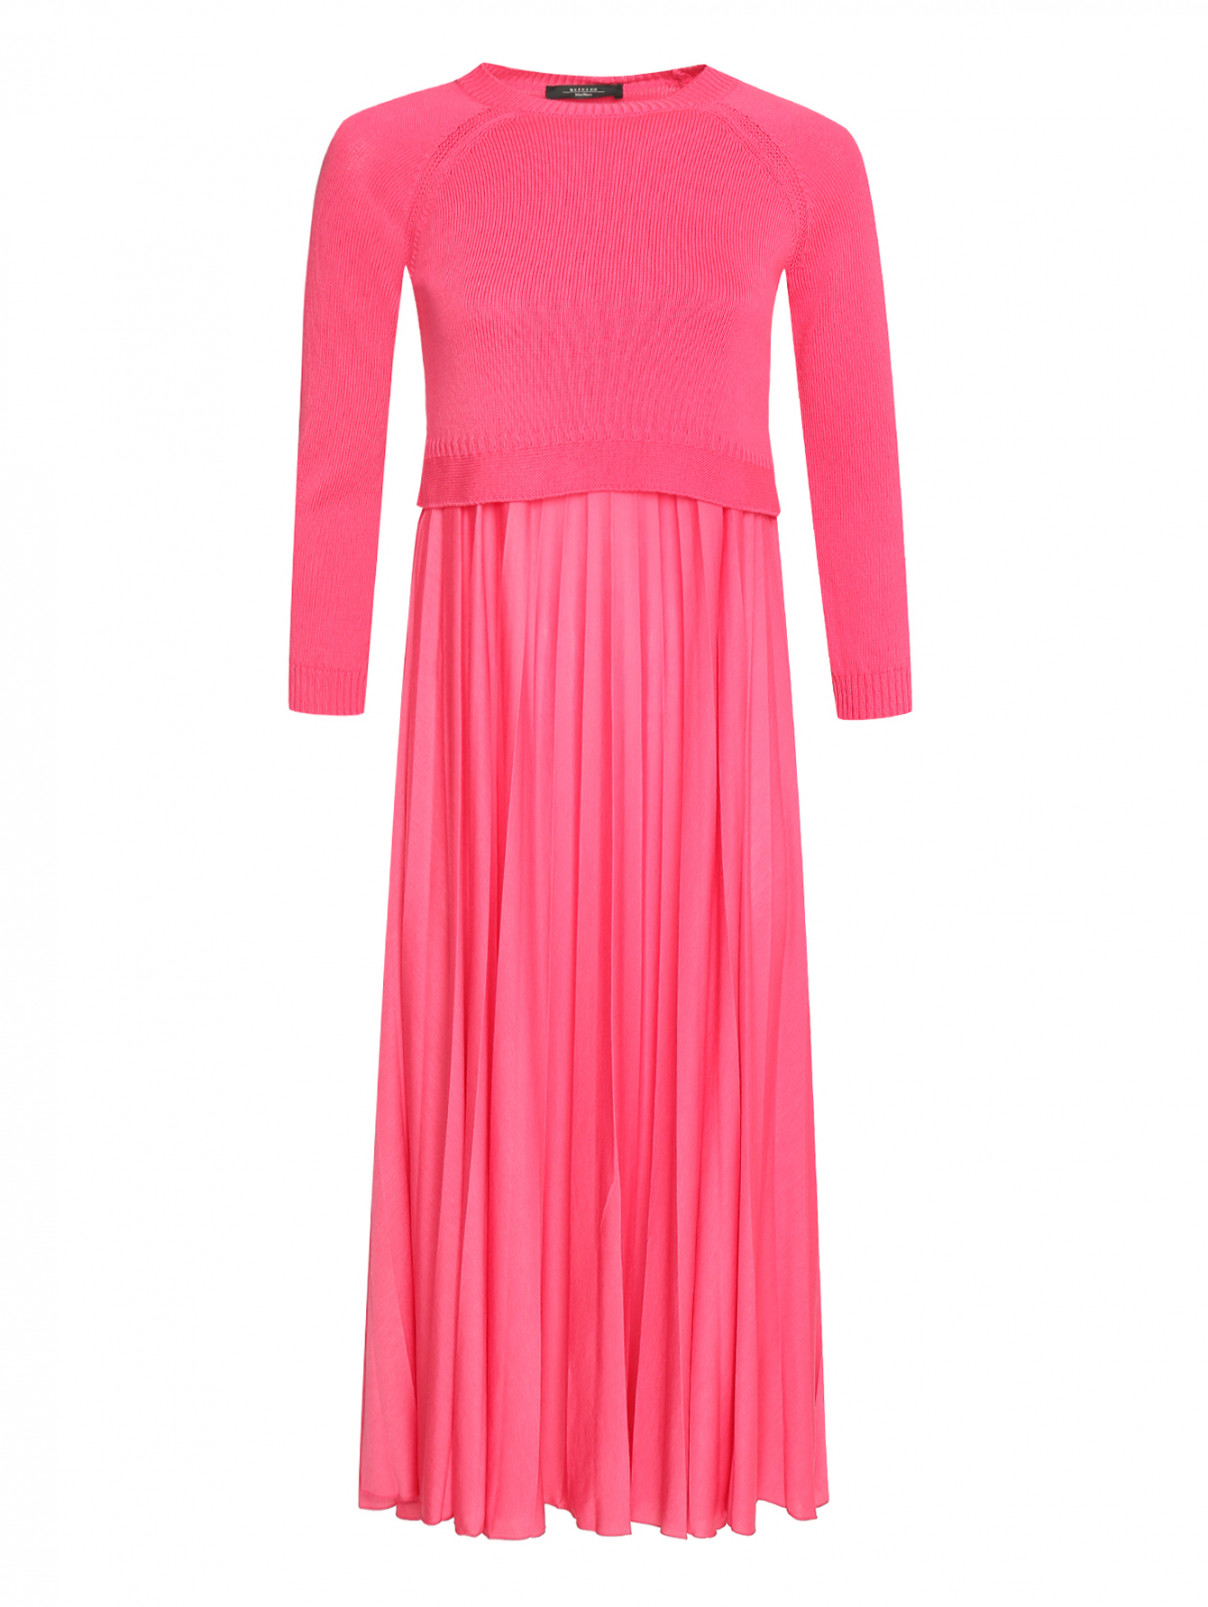 Платье-миди трикотажное из хлопка Weekend Max Mara  –  Общий вид  – Цвет:  Розовый